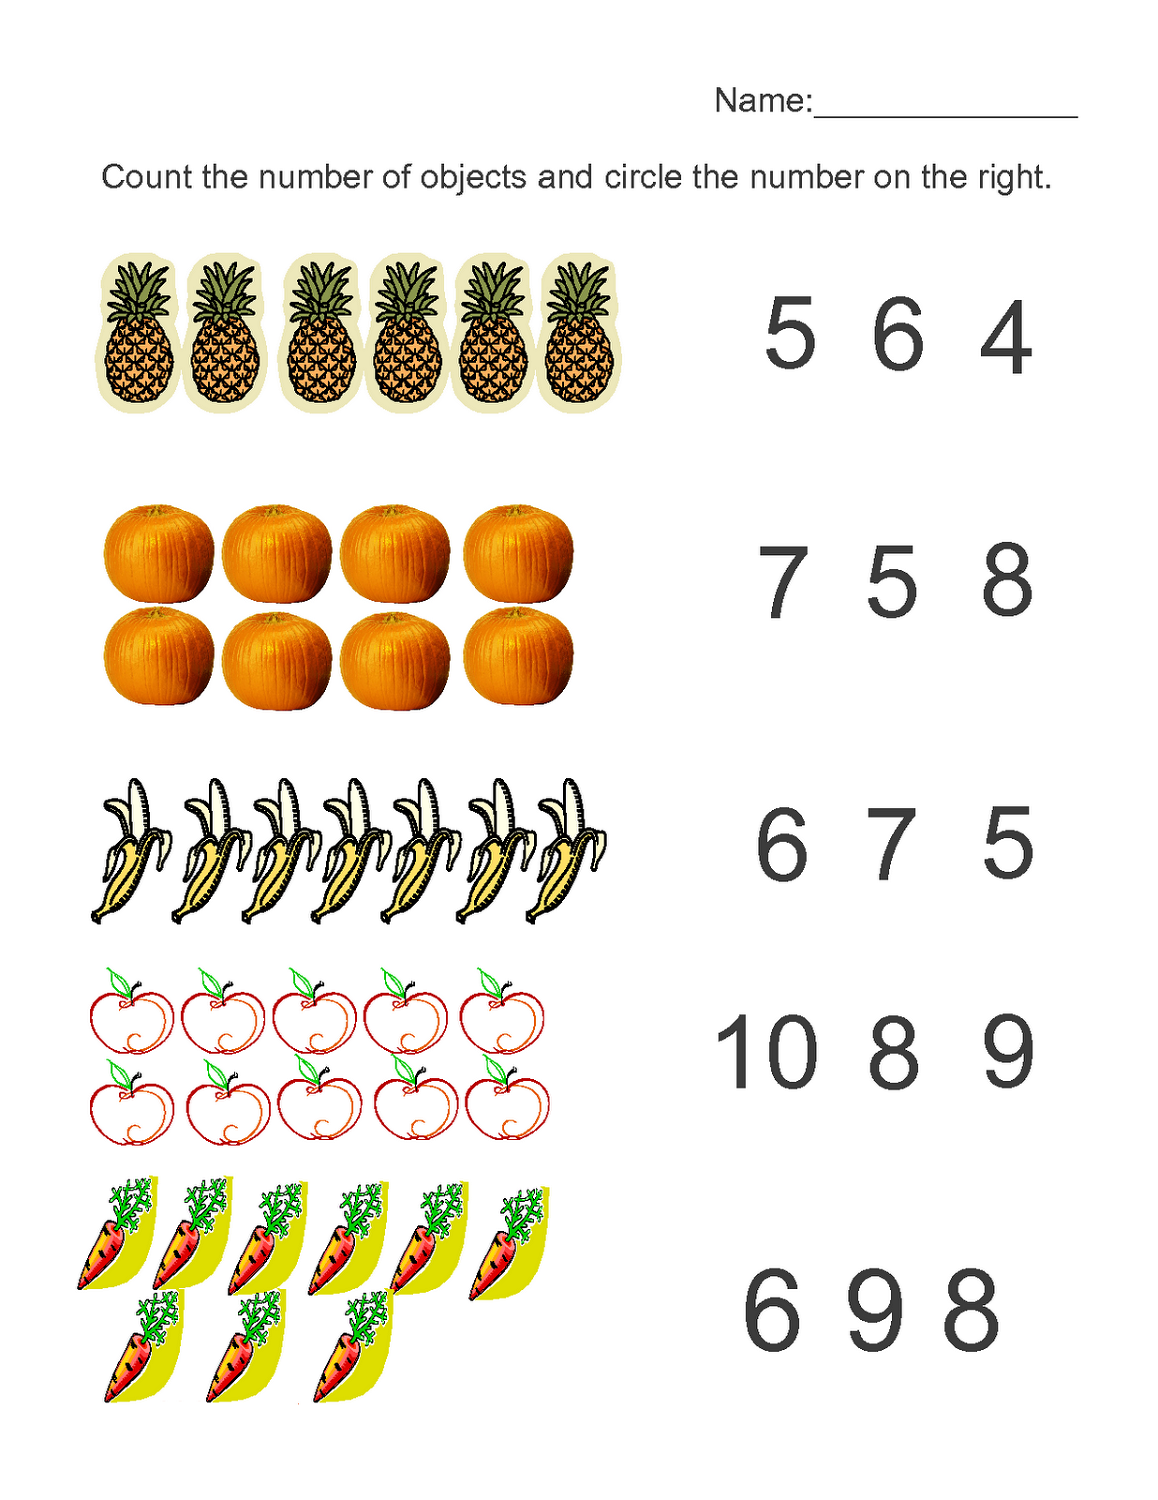 orangeflowerpatterns-get-numbers-1-10-worksheets-for-preschoolers-pictures